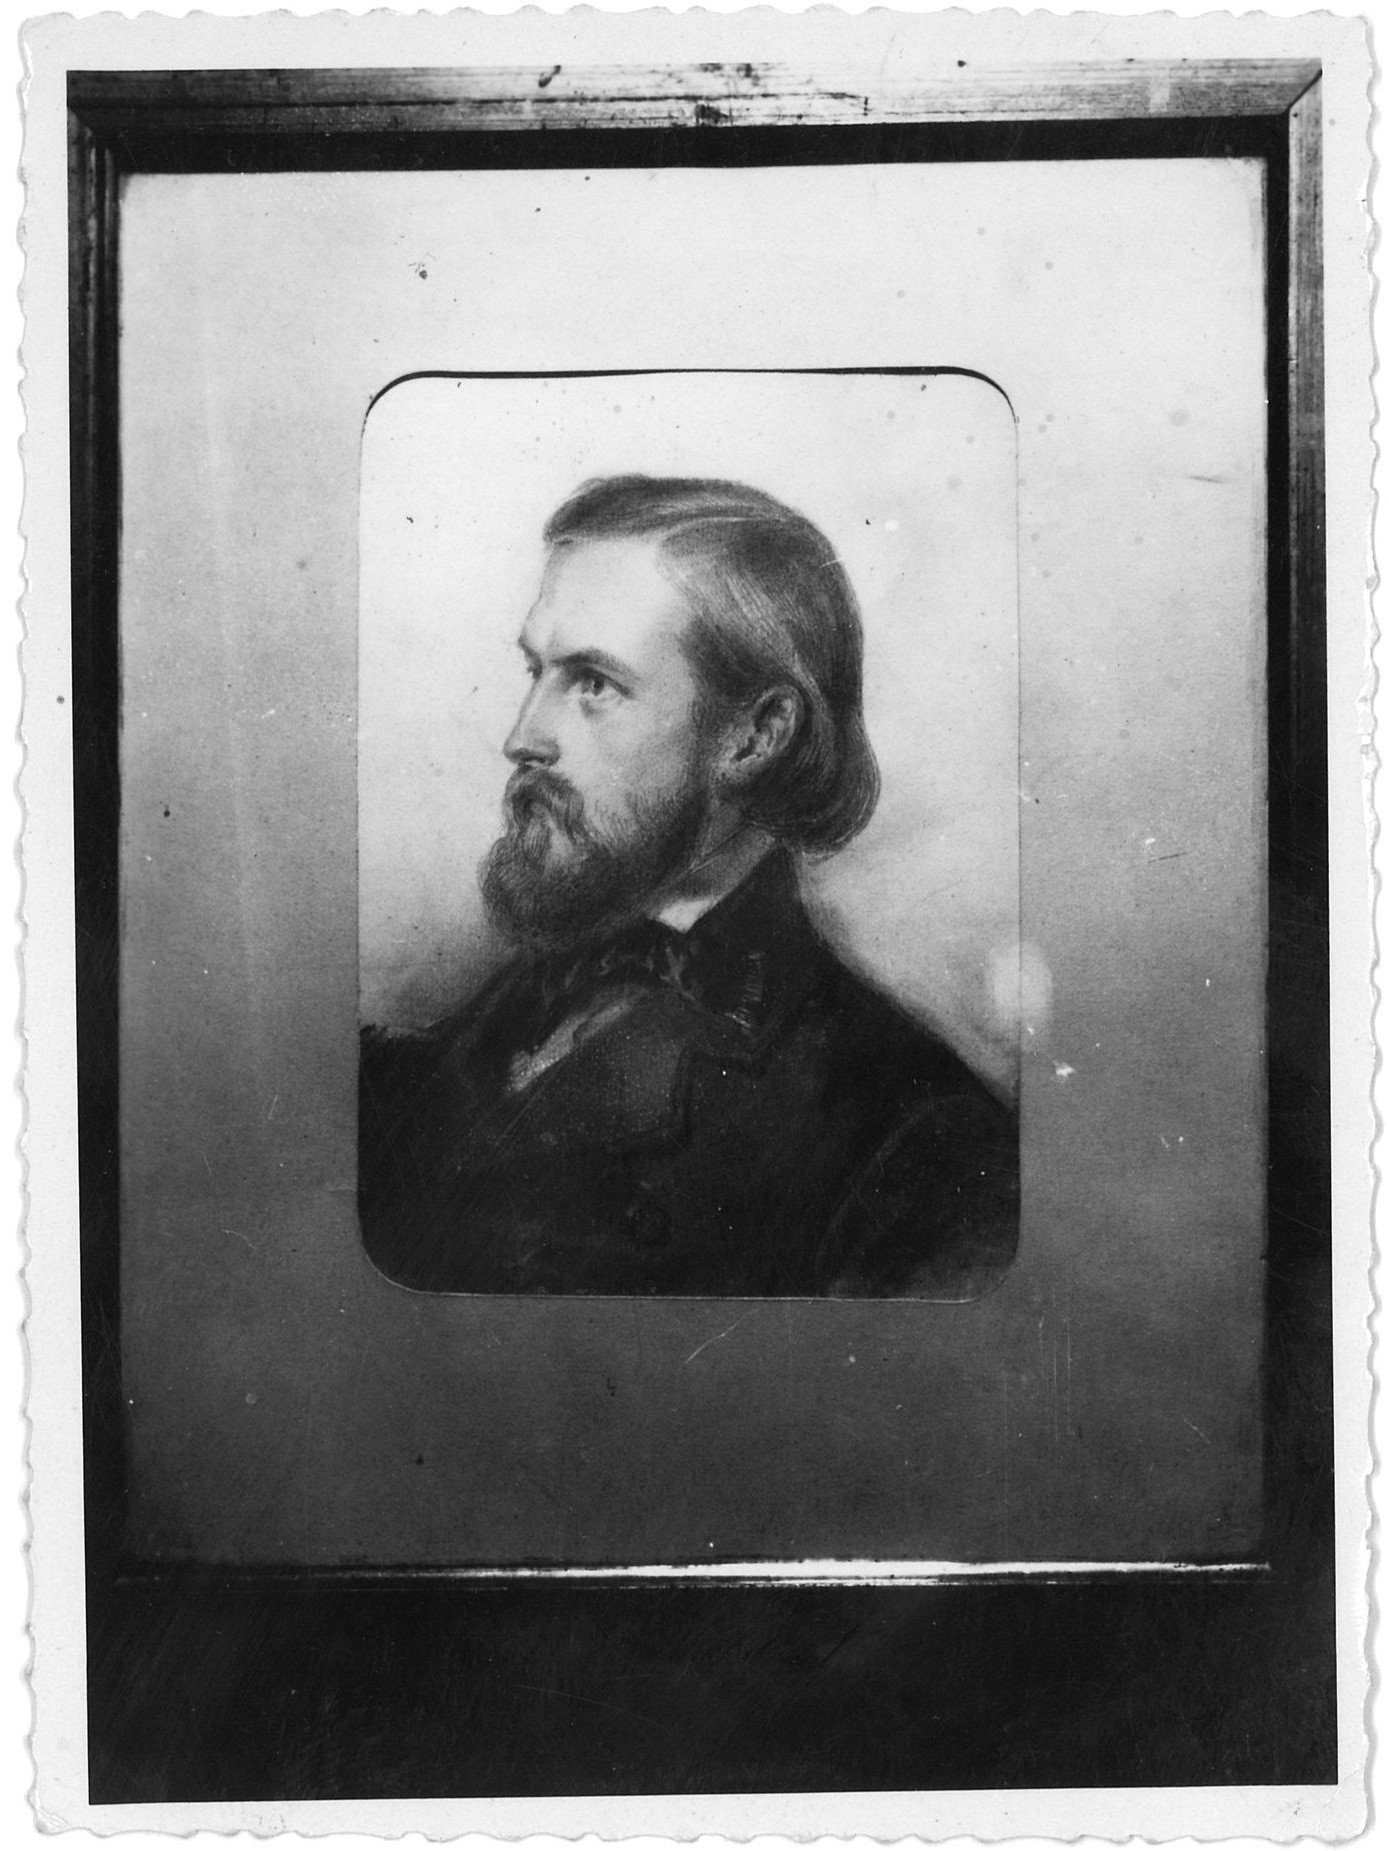 Lührß, Karl (1823-1882), Komponist (Landesgeschichtliche Vereinigung für die Mark Brandenburg e.V., Archiv CC BY)